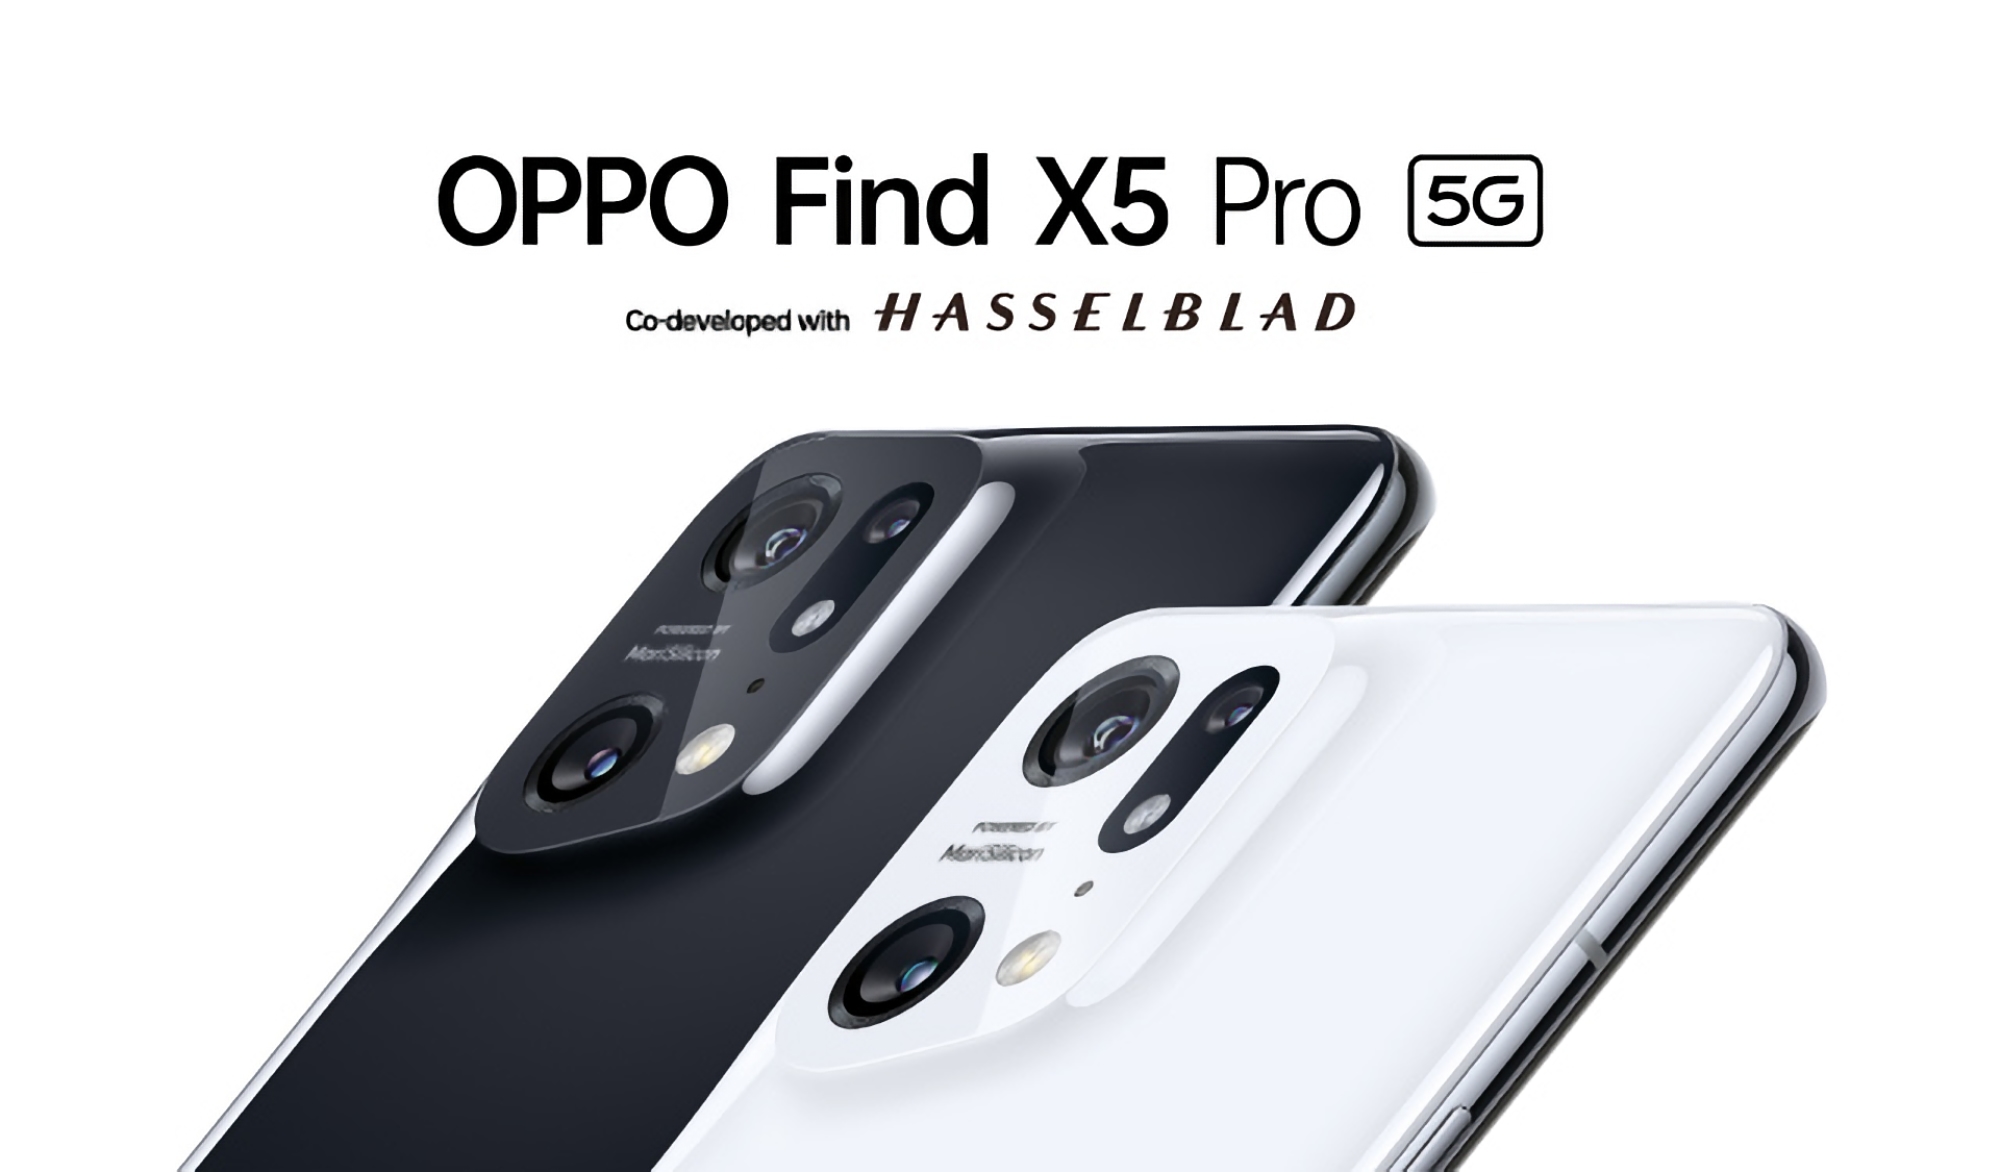 Ein Insider zeigte Pressedarstellungen von OPPO Find X5, OPPO Find X5 Pro und OPPO Find X5 Lite